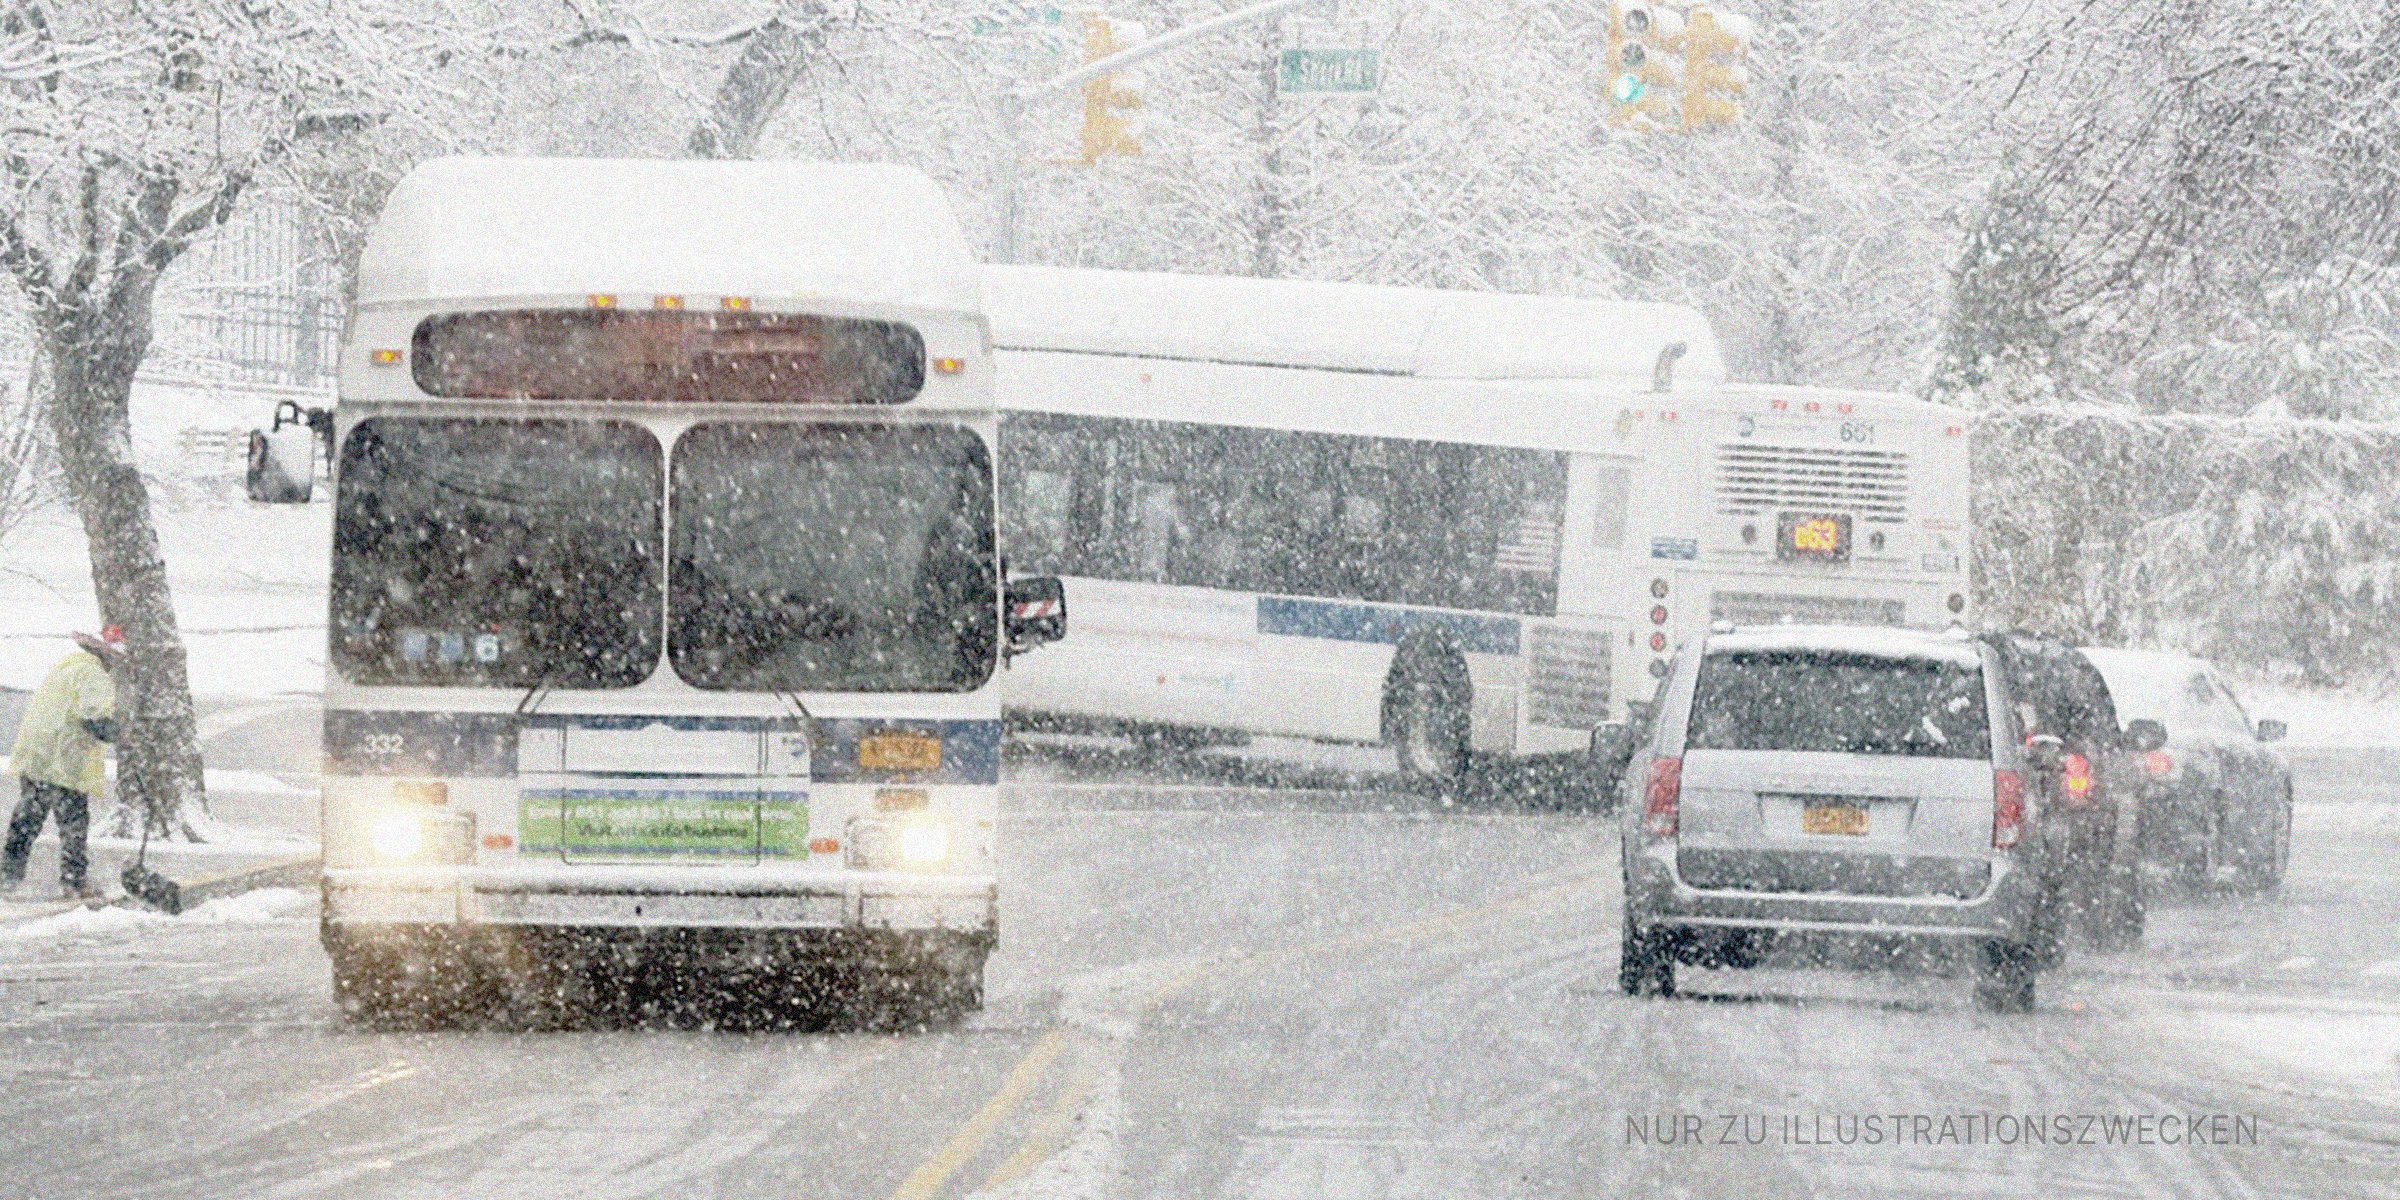 Bus und Autos an einem verschneiten Tag | Quelle: Flickr / MTAPhotos (CC BY 2.0)